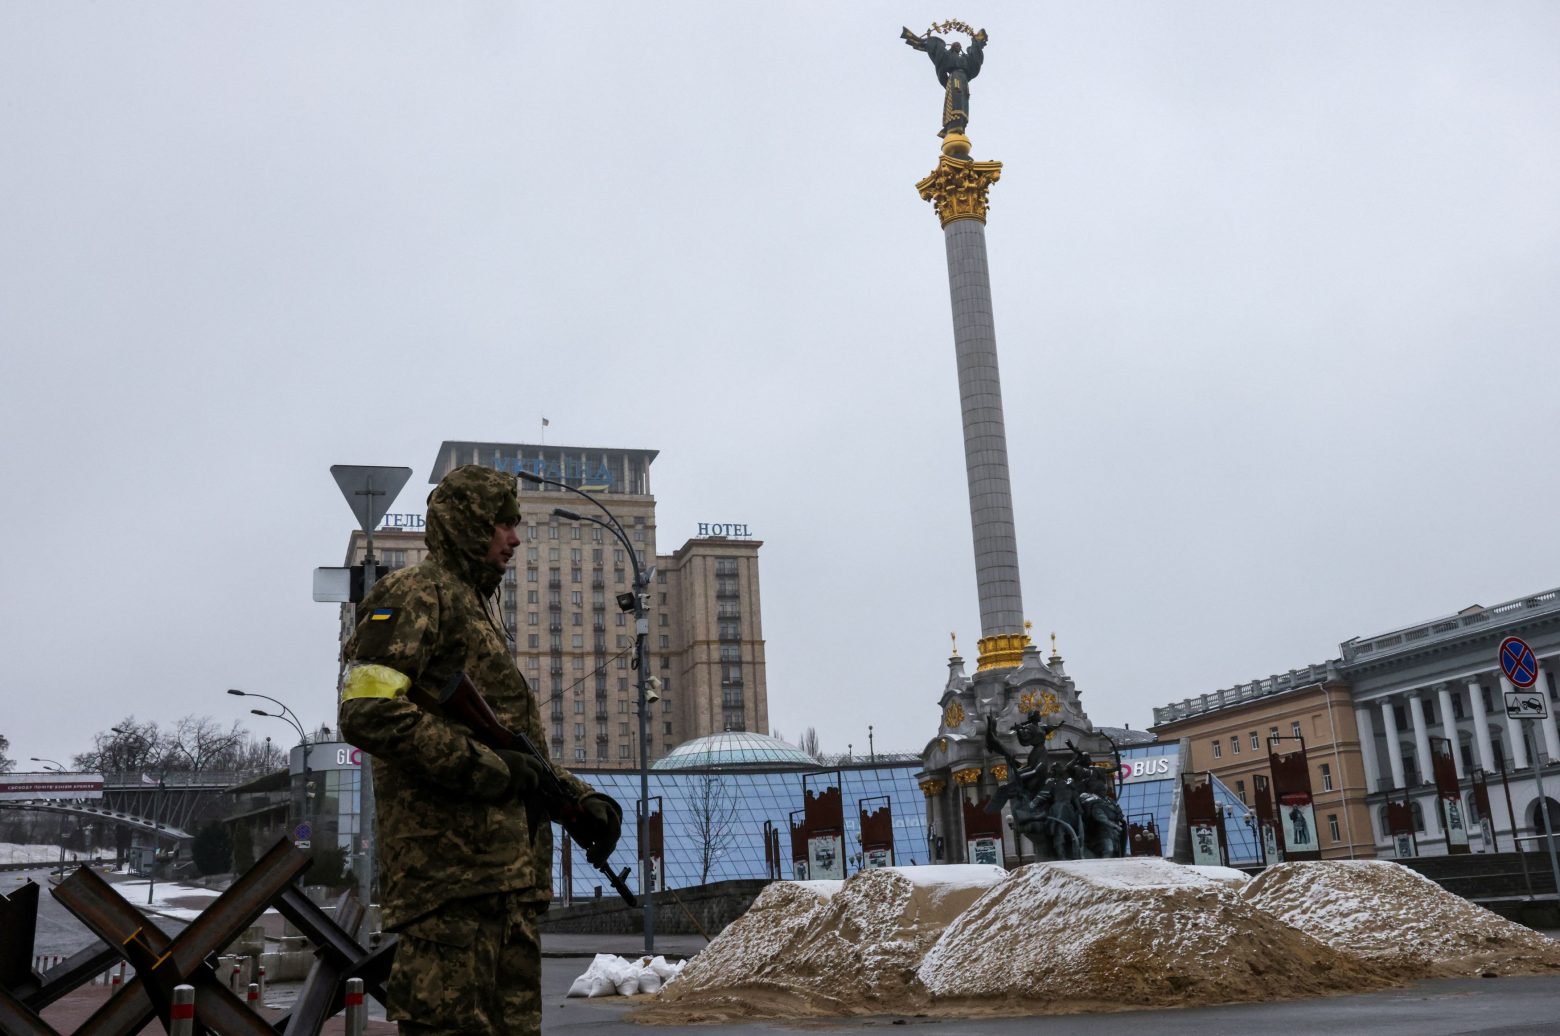 Ουκρανία: Μισθοφόροι πάνε να πολεμήσουν - Ο απίστευτος μισθός που θα παίρνουν